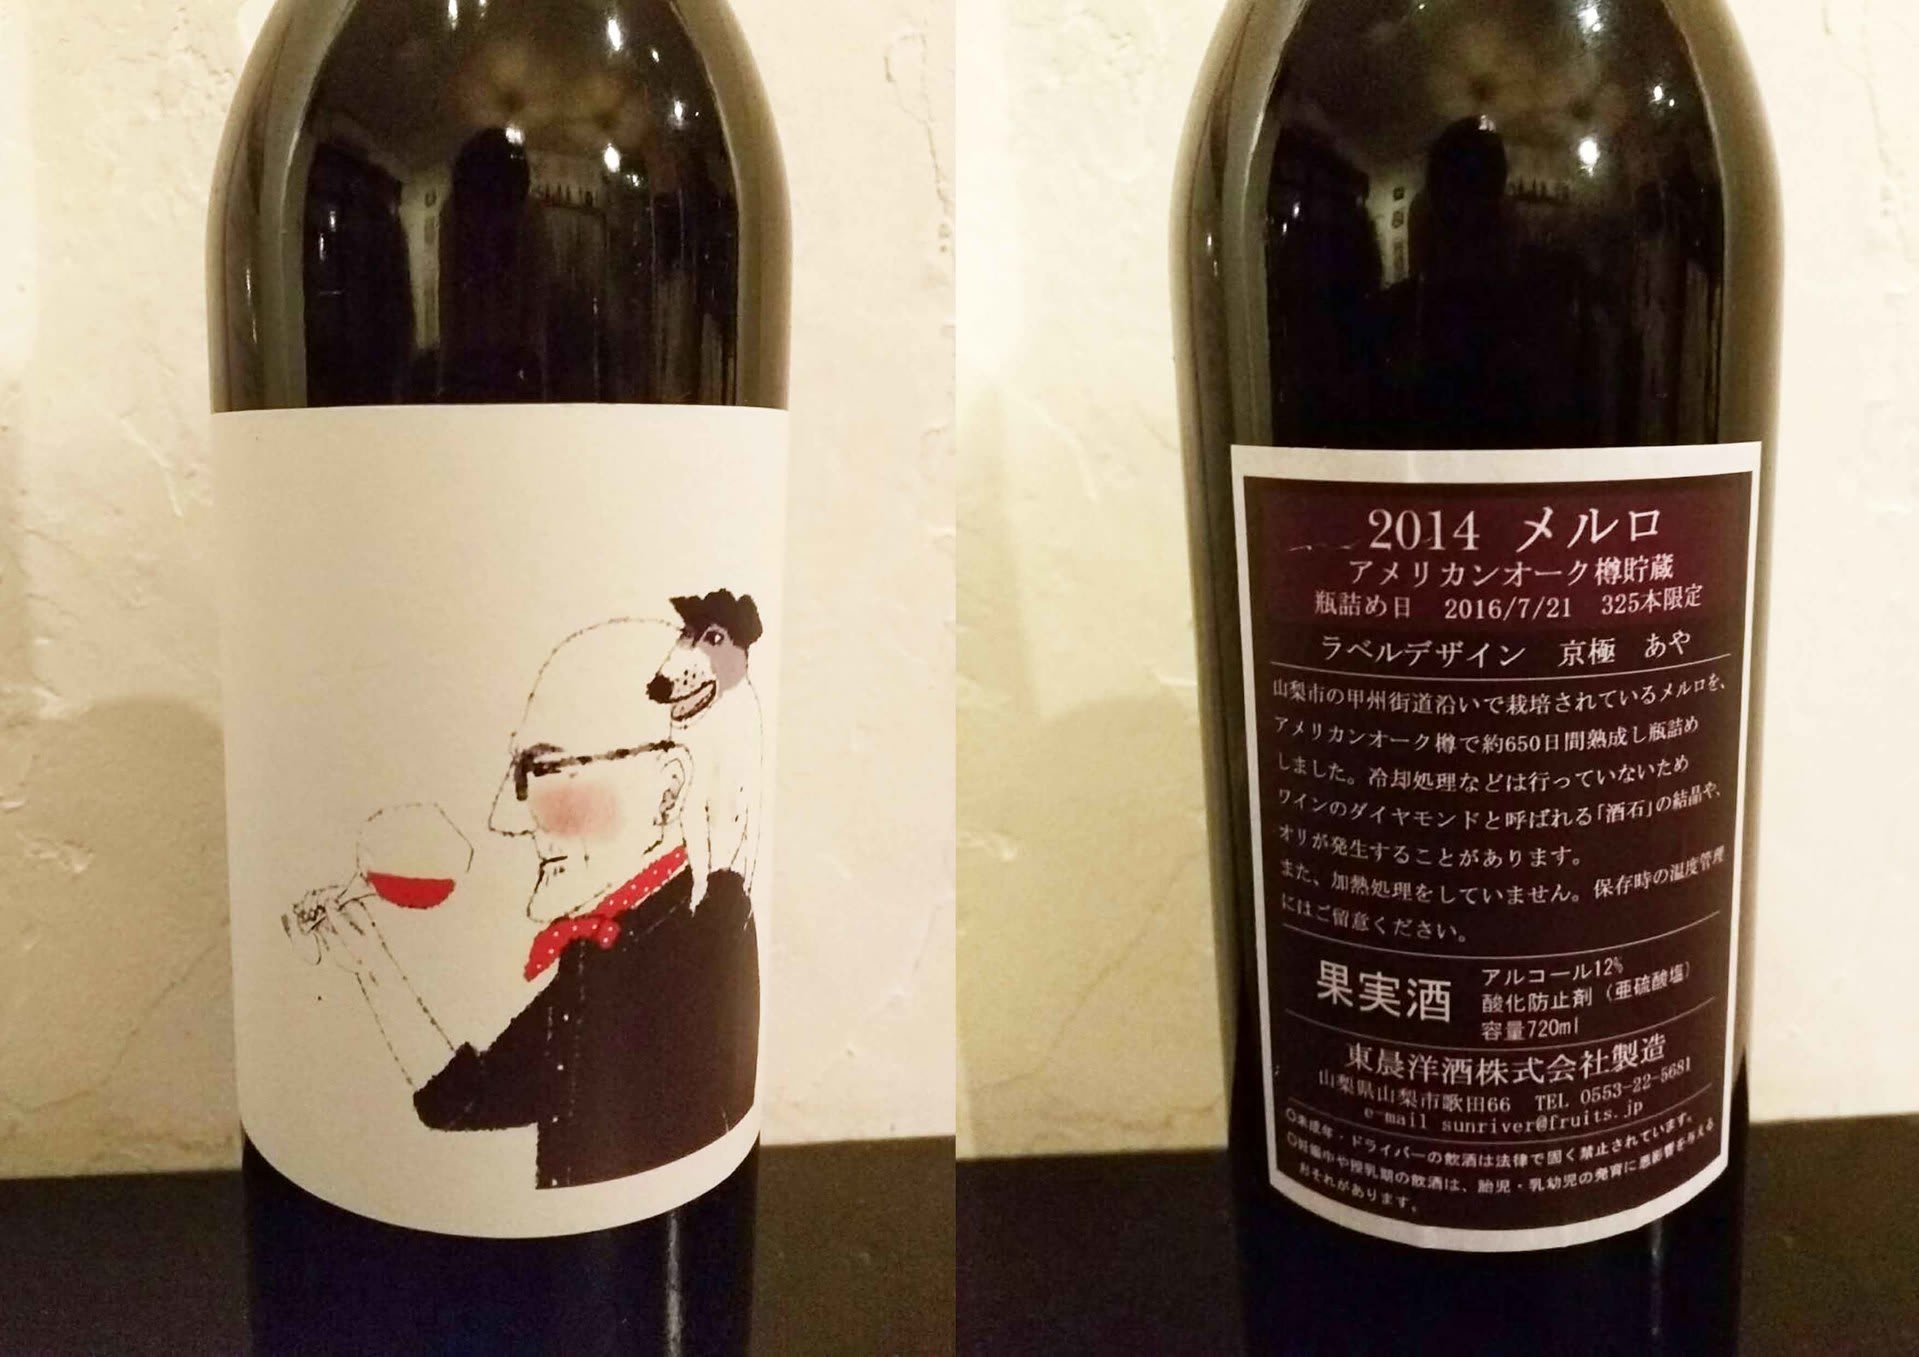 ラベルコンテスト受賞作品のワインがついに完成しました 日本のワインで乾杯